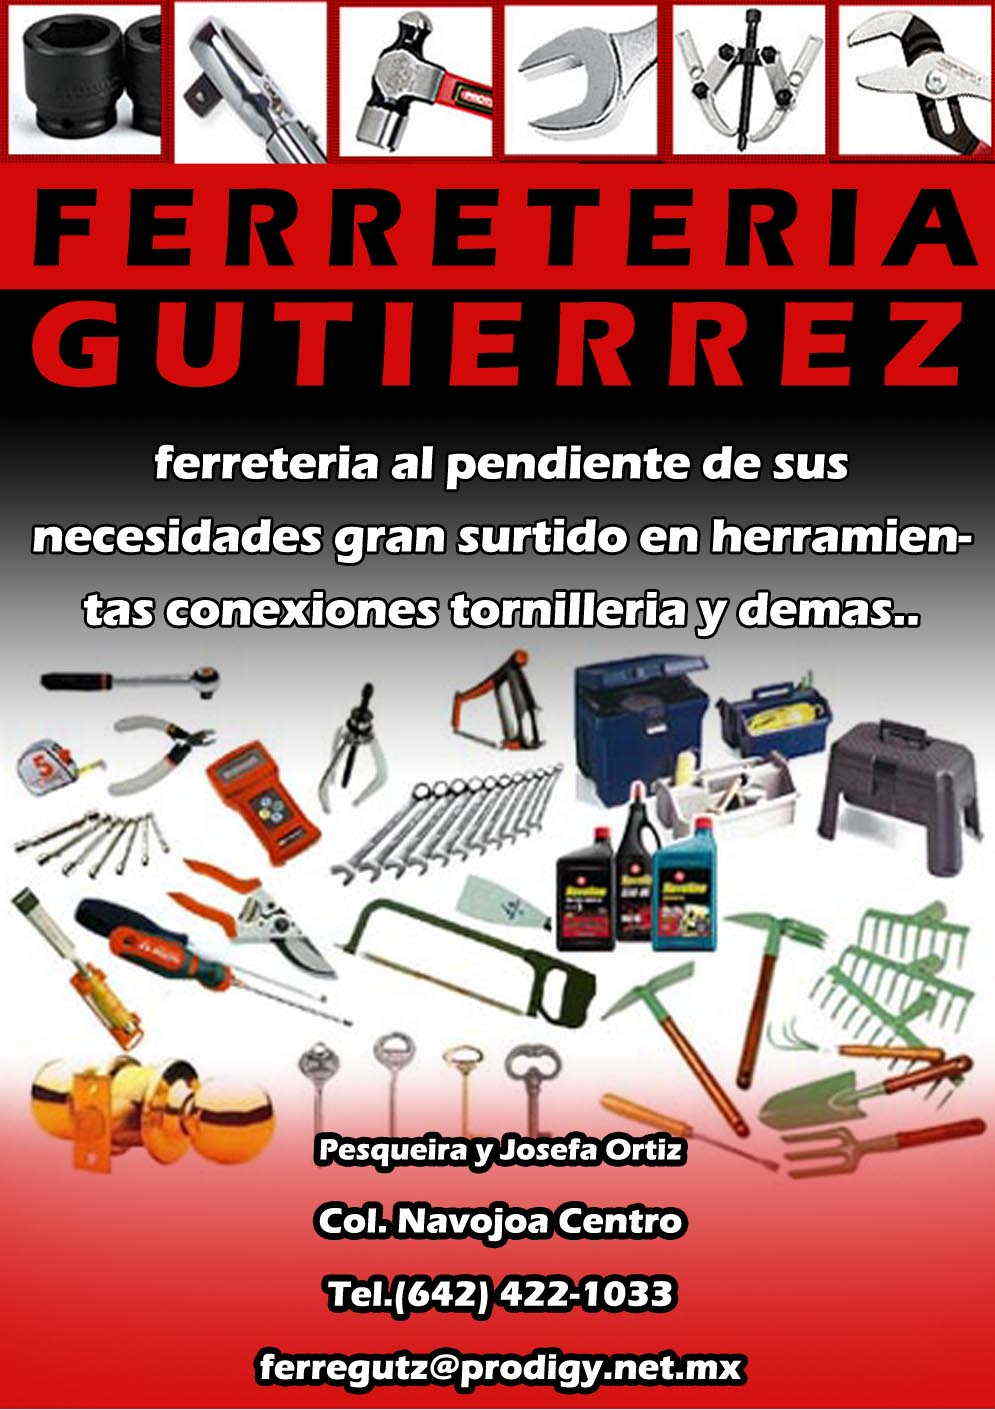 FERRETERIA GUTIERREZ-ferreteria al pendiente de sus necesidades gran surtido en herramientas conexiones tornilleria y demas     